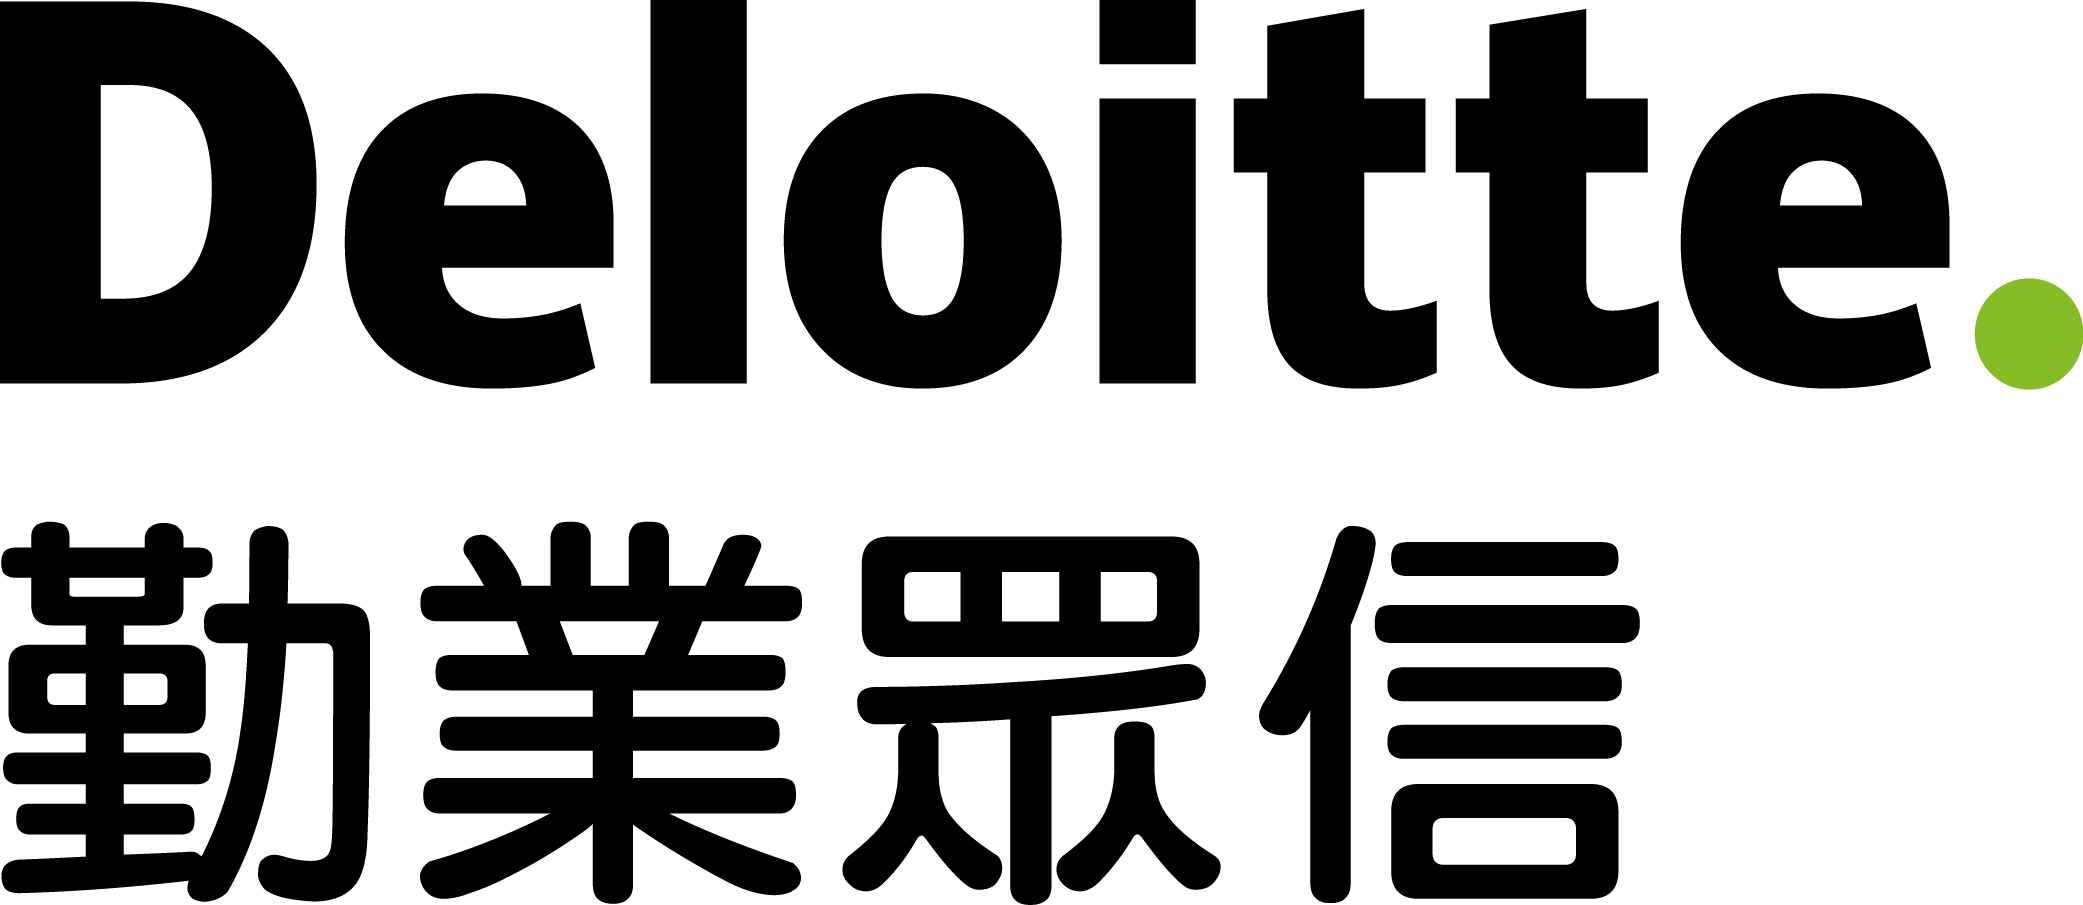 Deloitte - Dec.19.2017.png